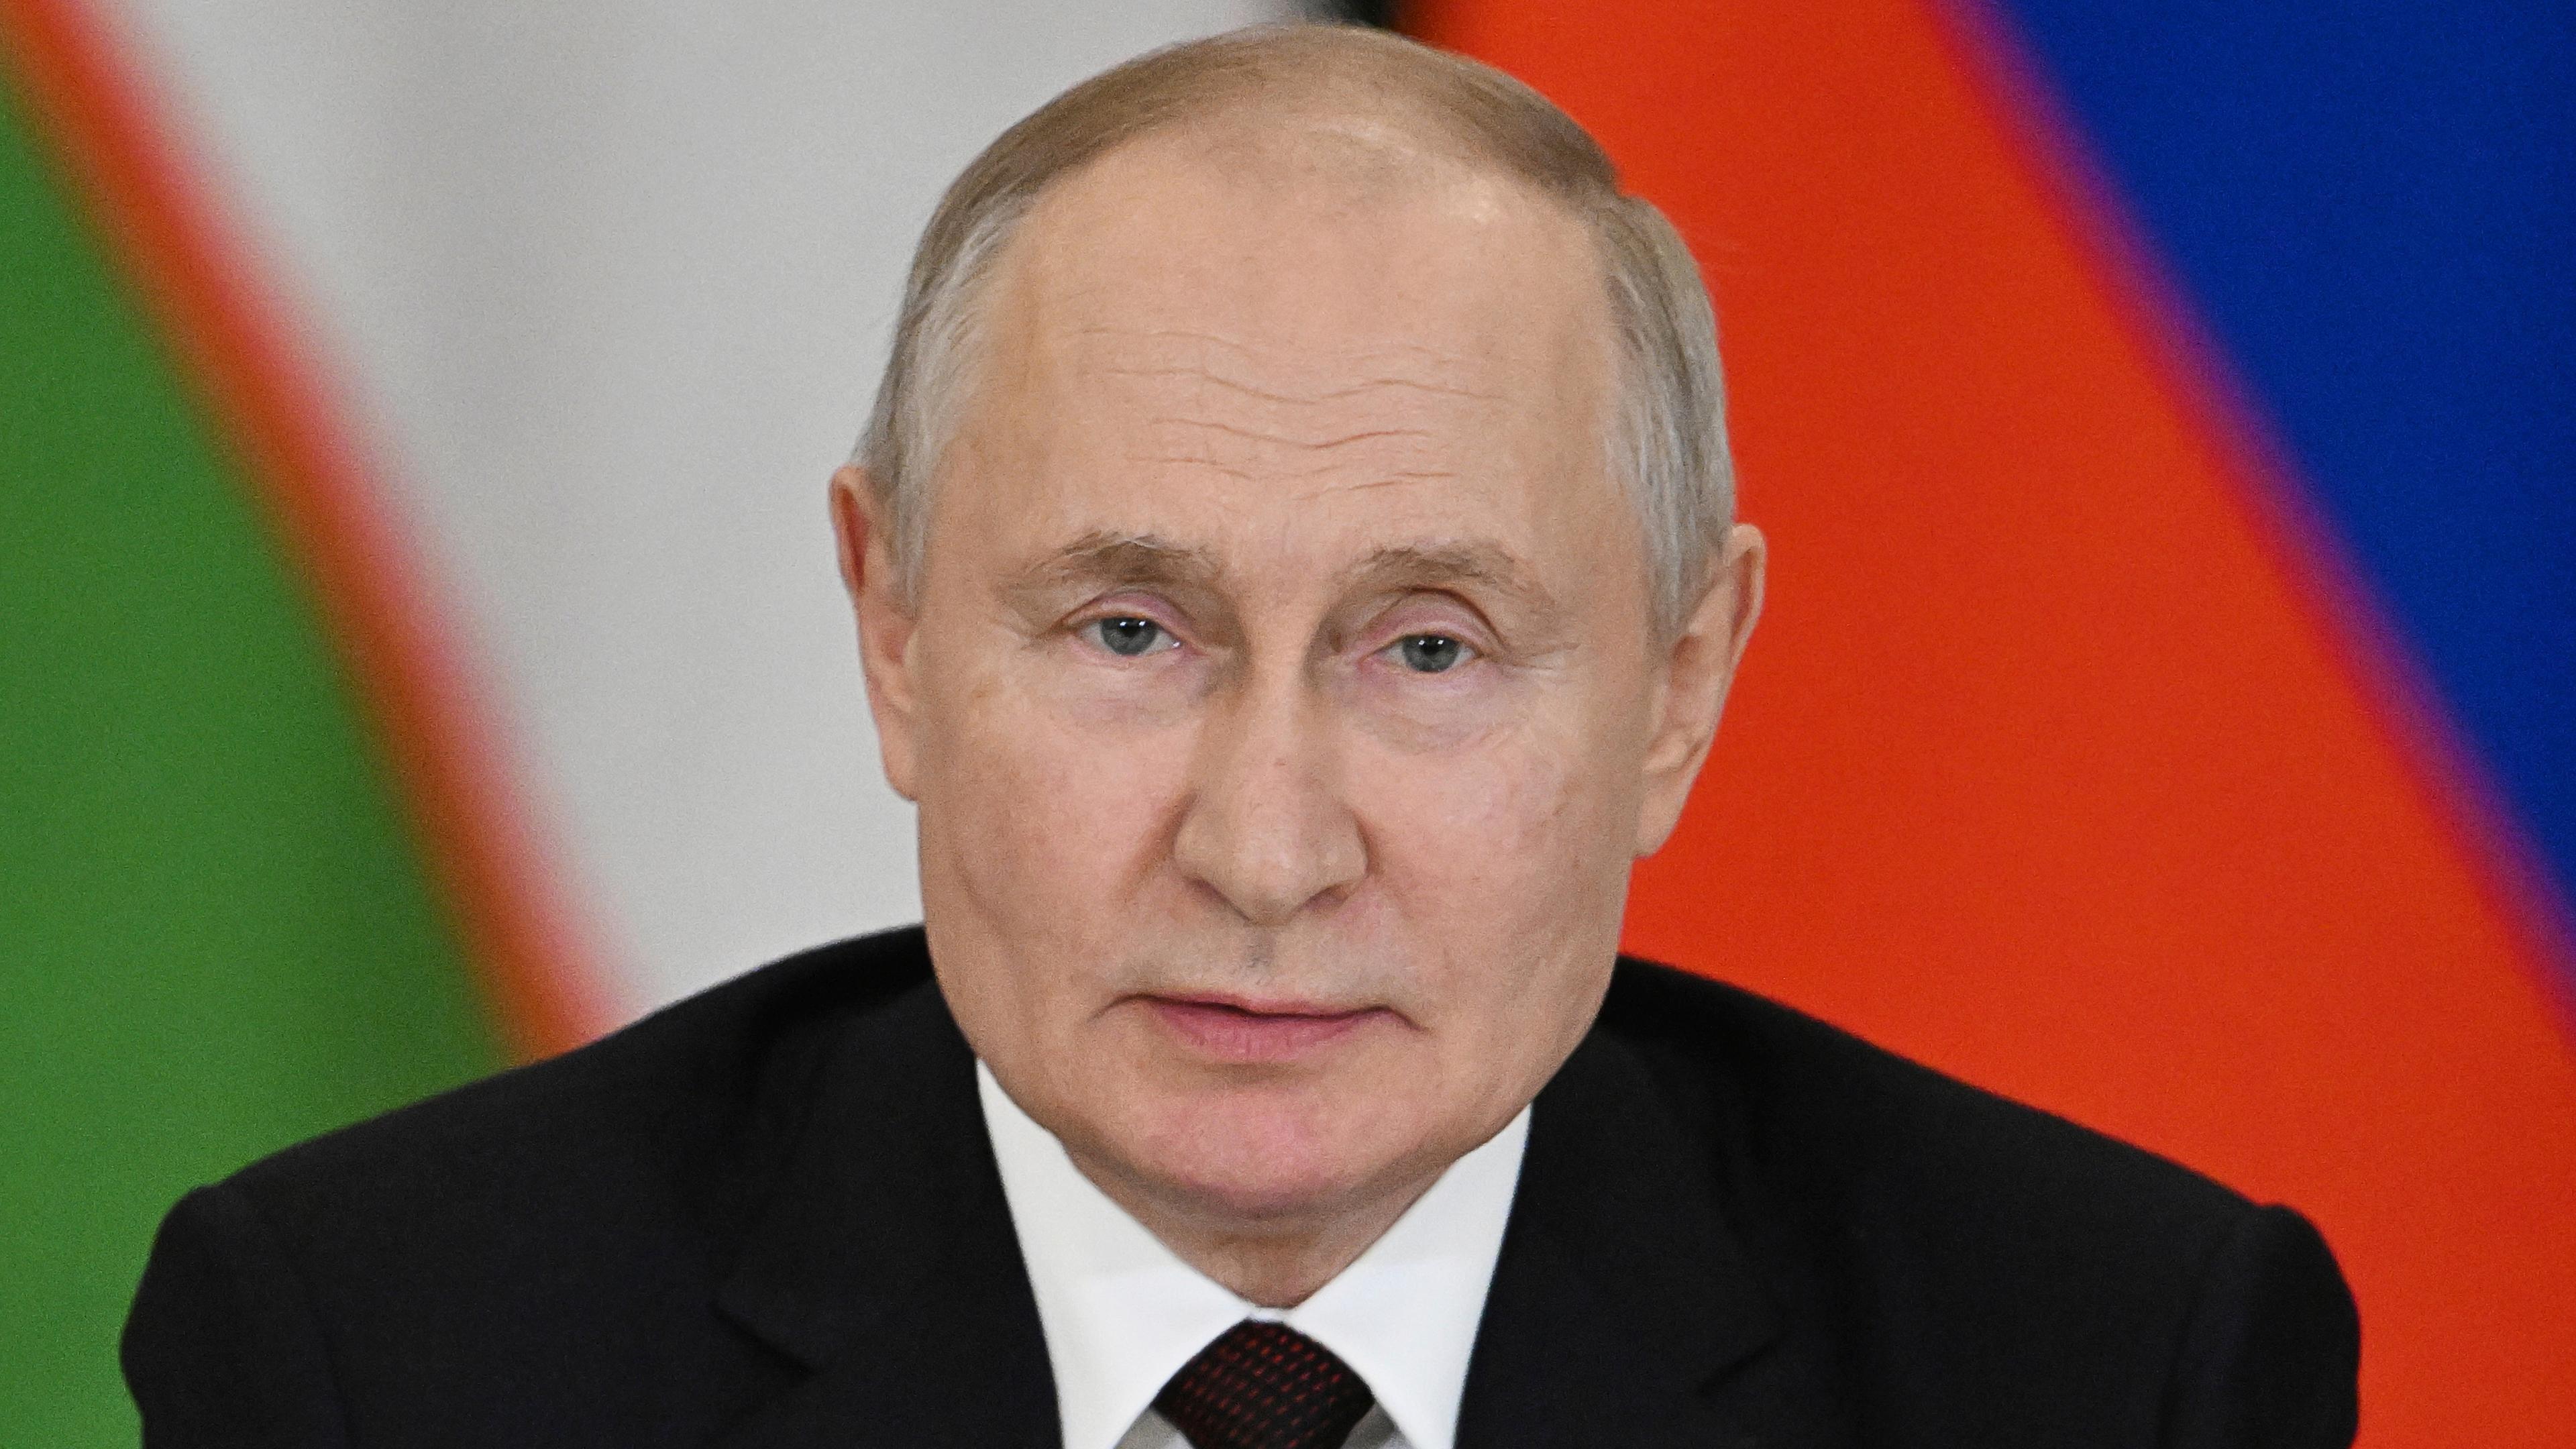 Dieses von der staatlichen russischen Nachrichtenagentur Sputnik via AP veröffentlichte Foto zeigt Wladimir Putin, Präsident von Russland.